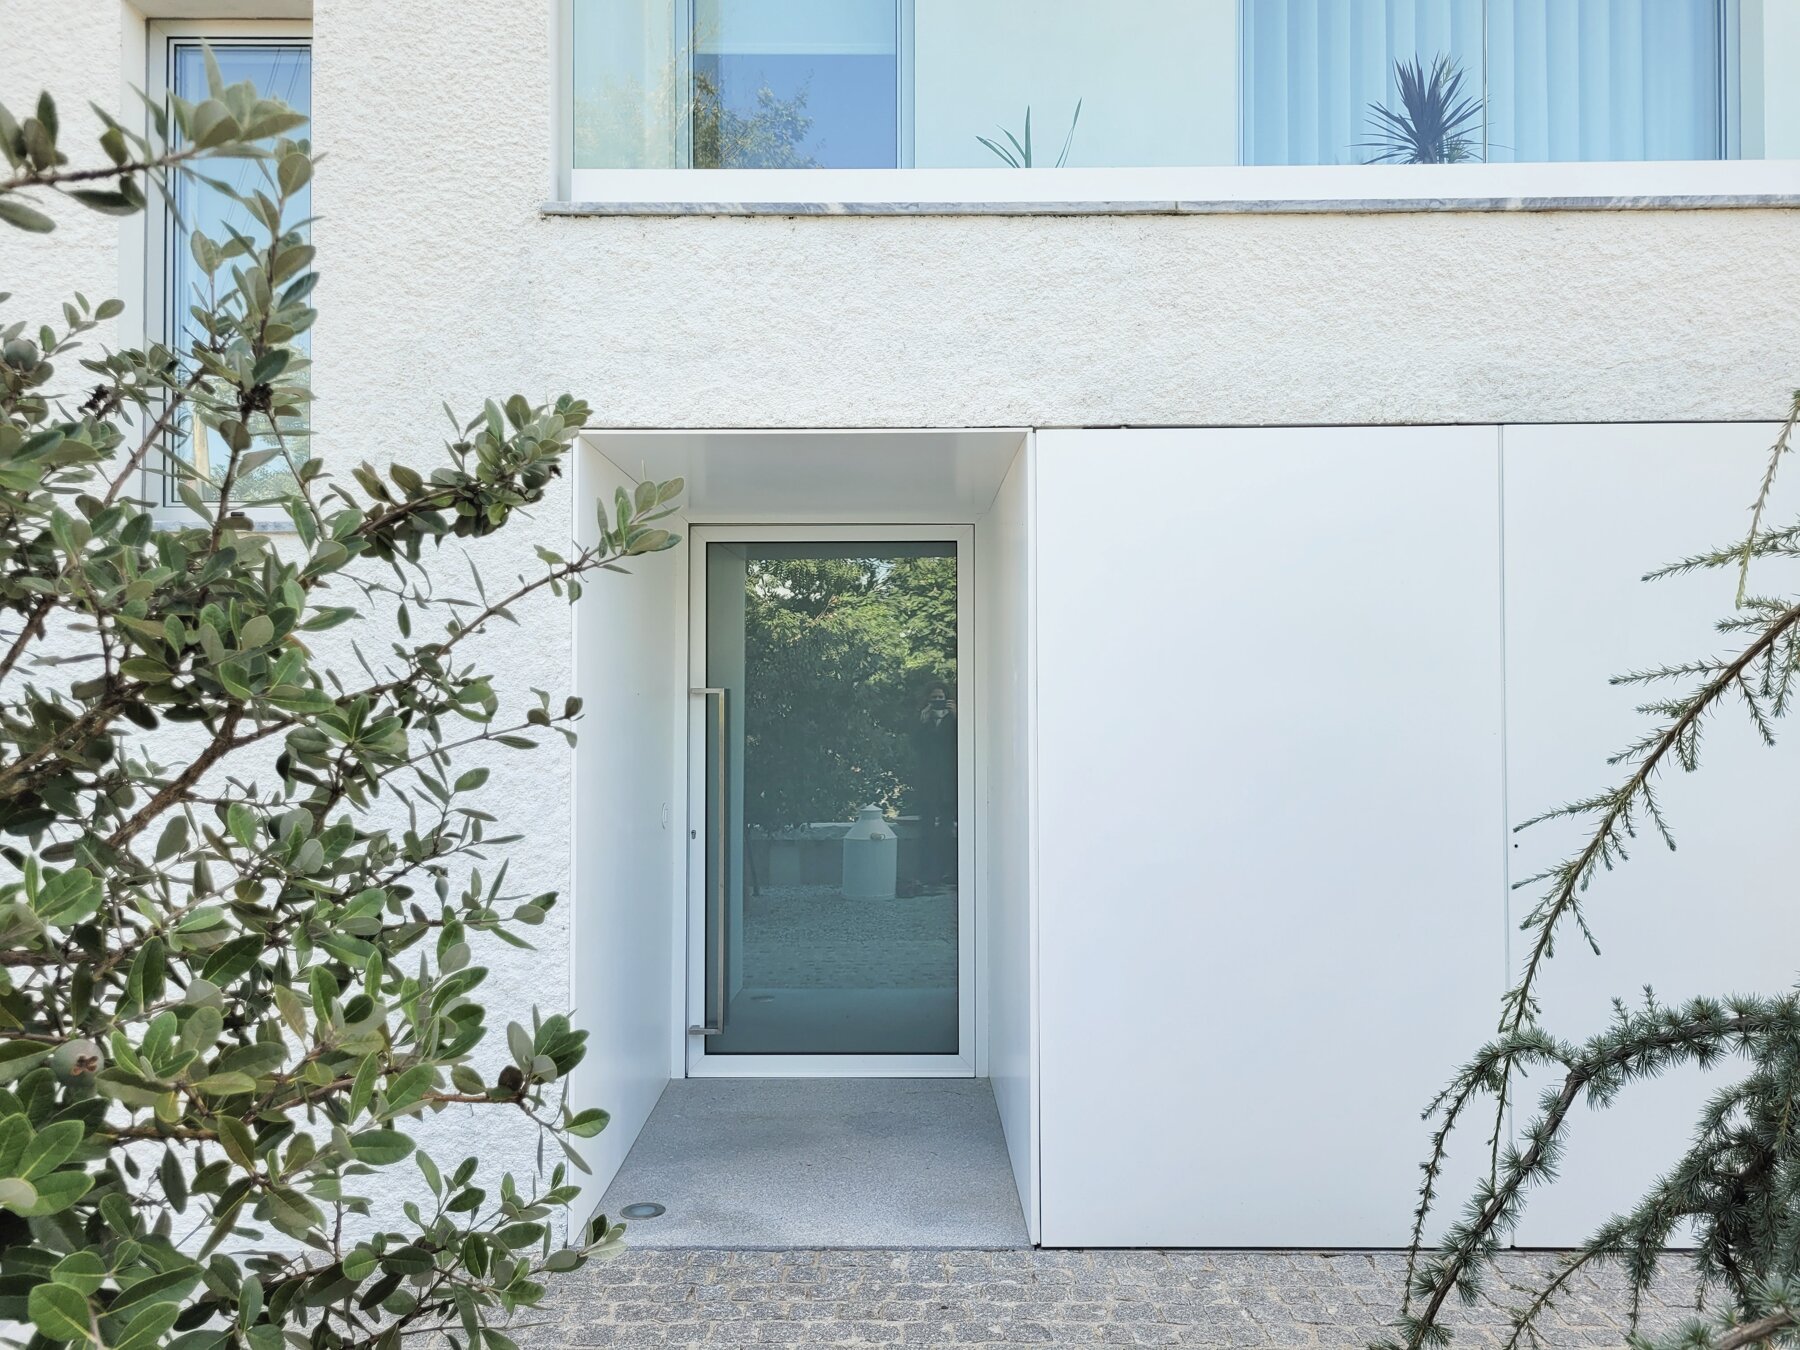 Aménagement extérieur - Maison individuelle par un architecte Archidvisor